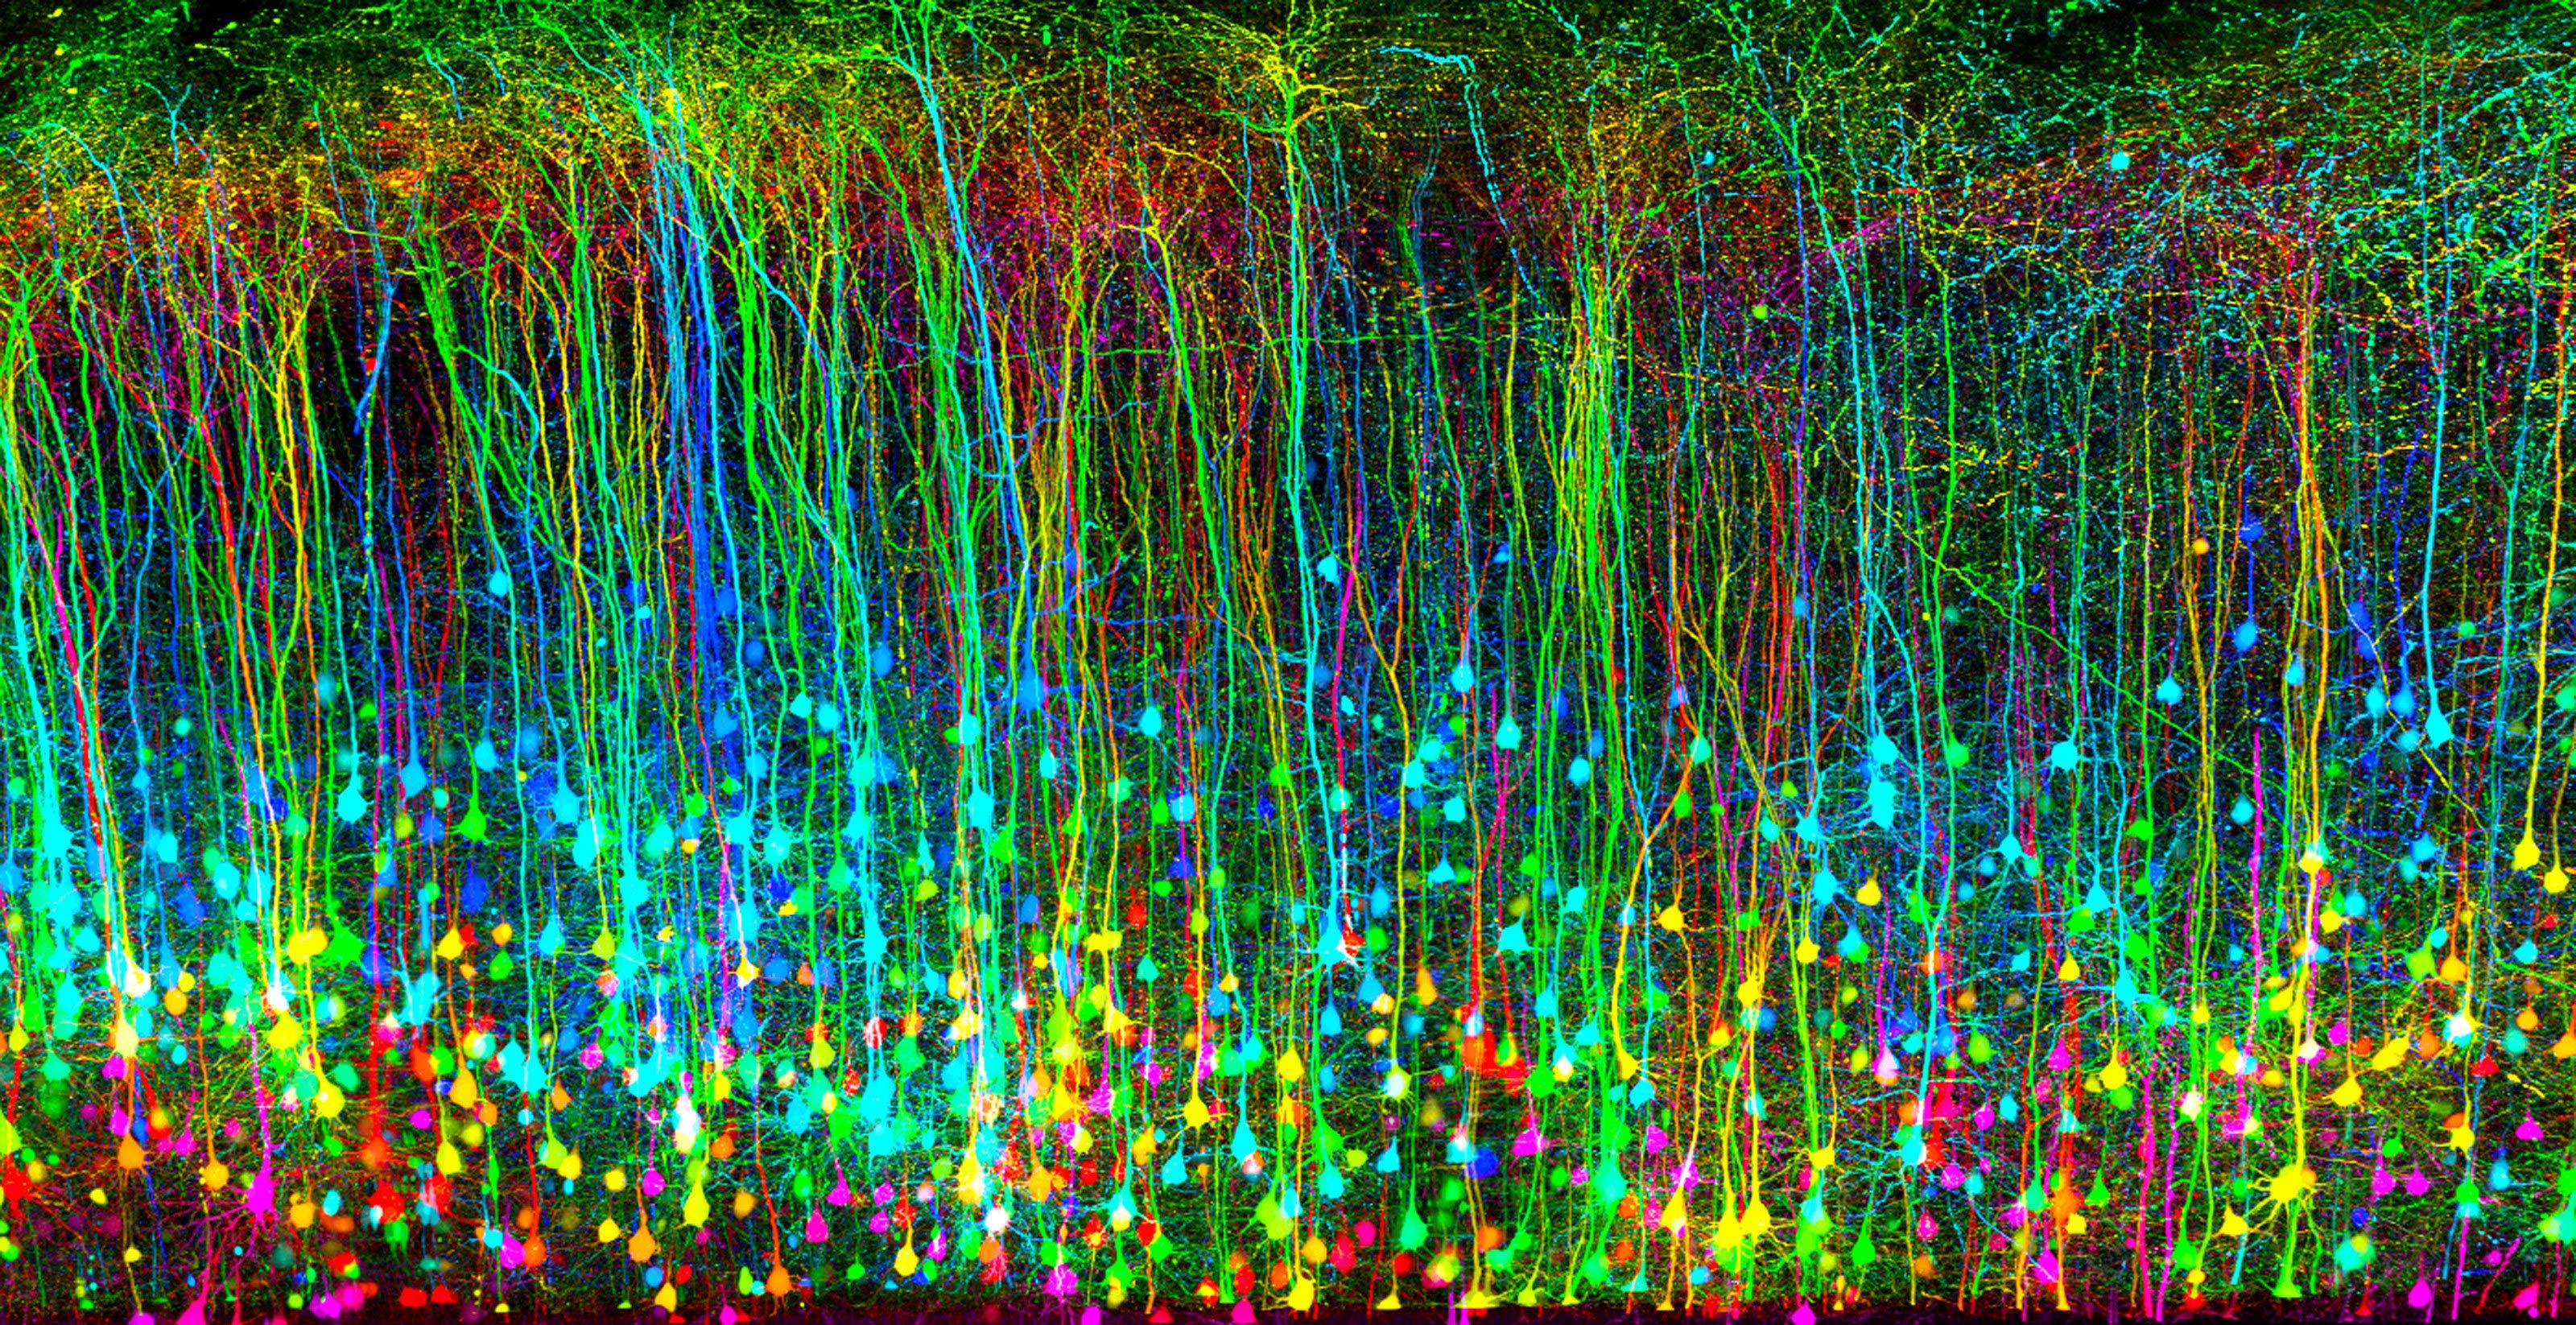 Traumatisme crânien d'une souris vu au microscope. Il forme des centaines de filaments "tombants" aux couleurs vives et fluorescentes.